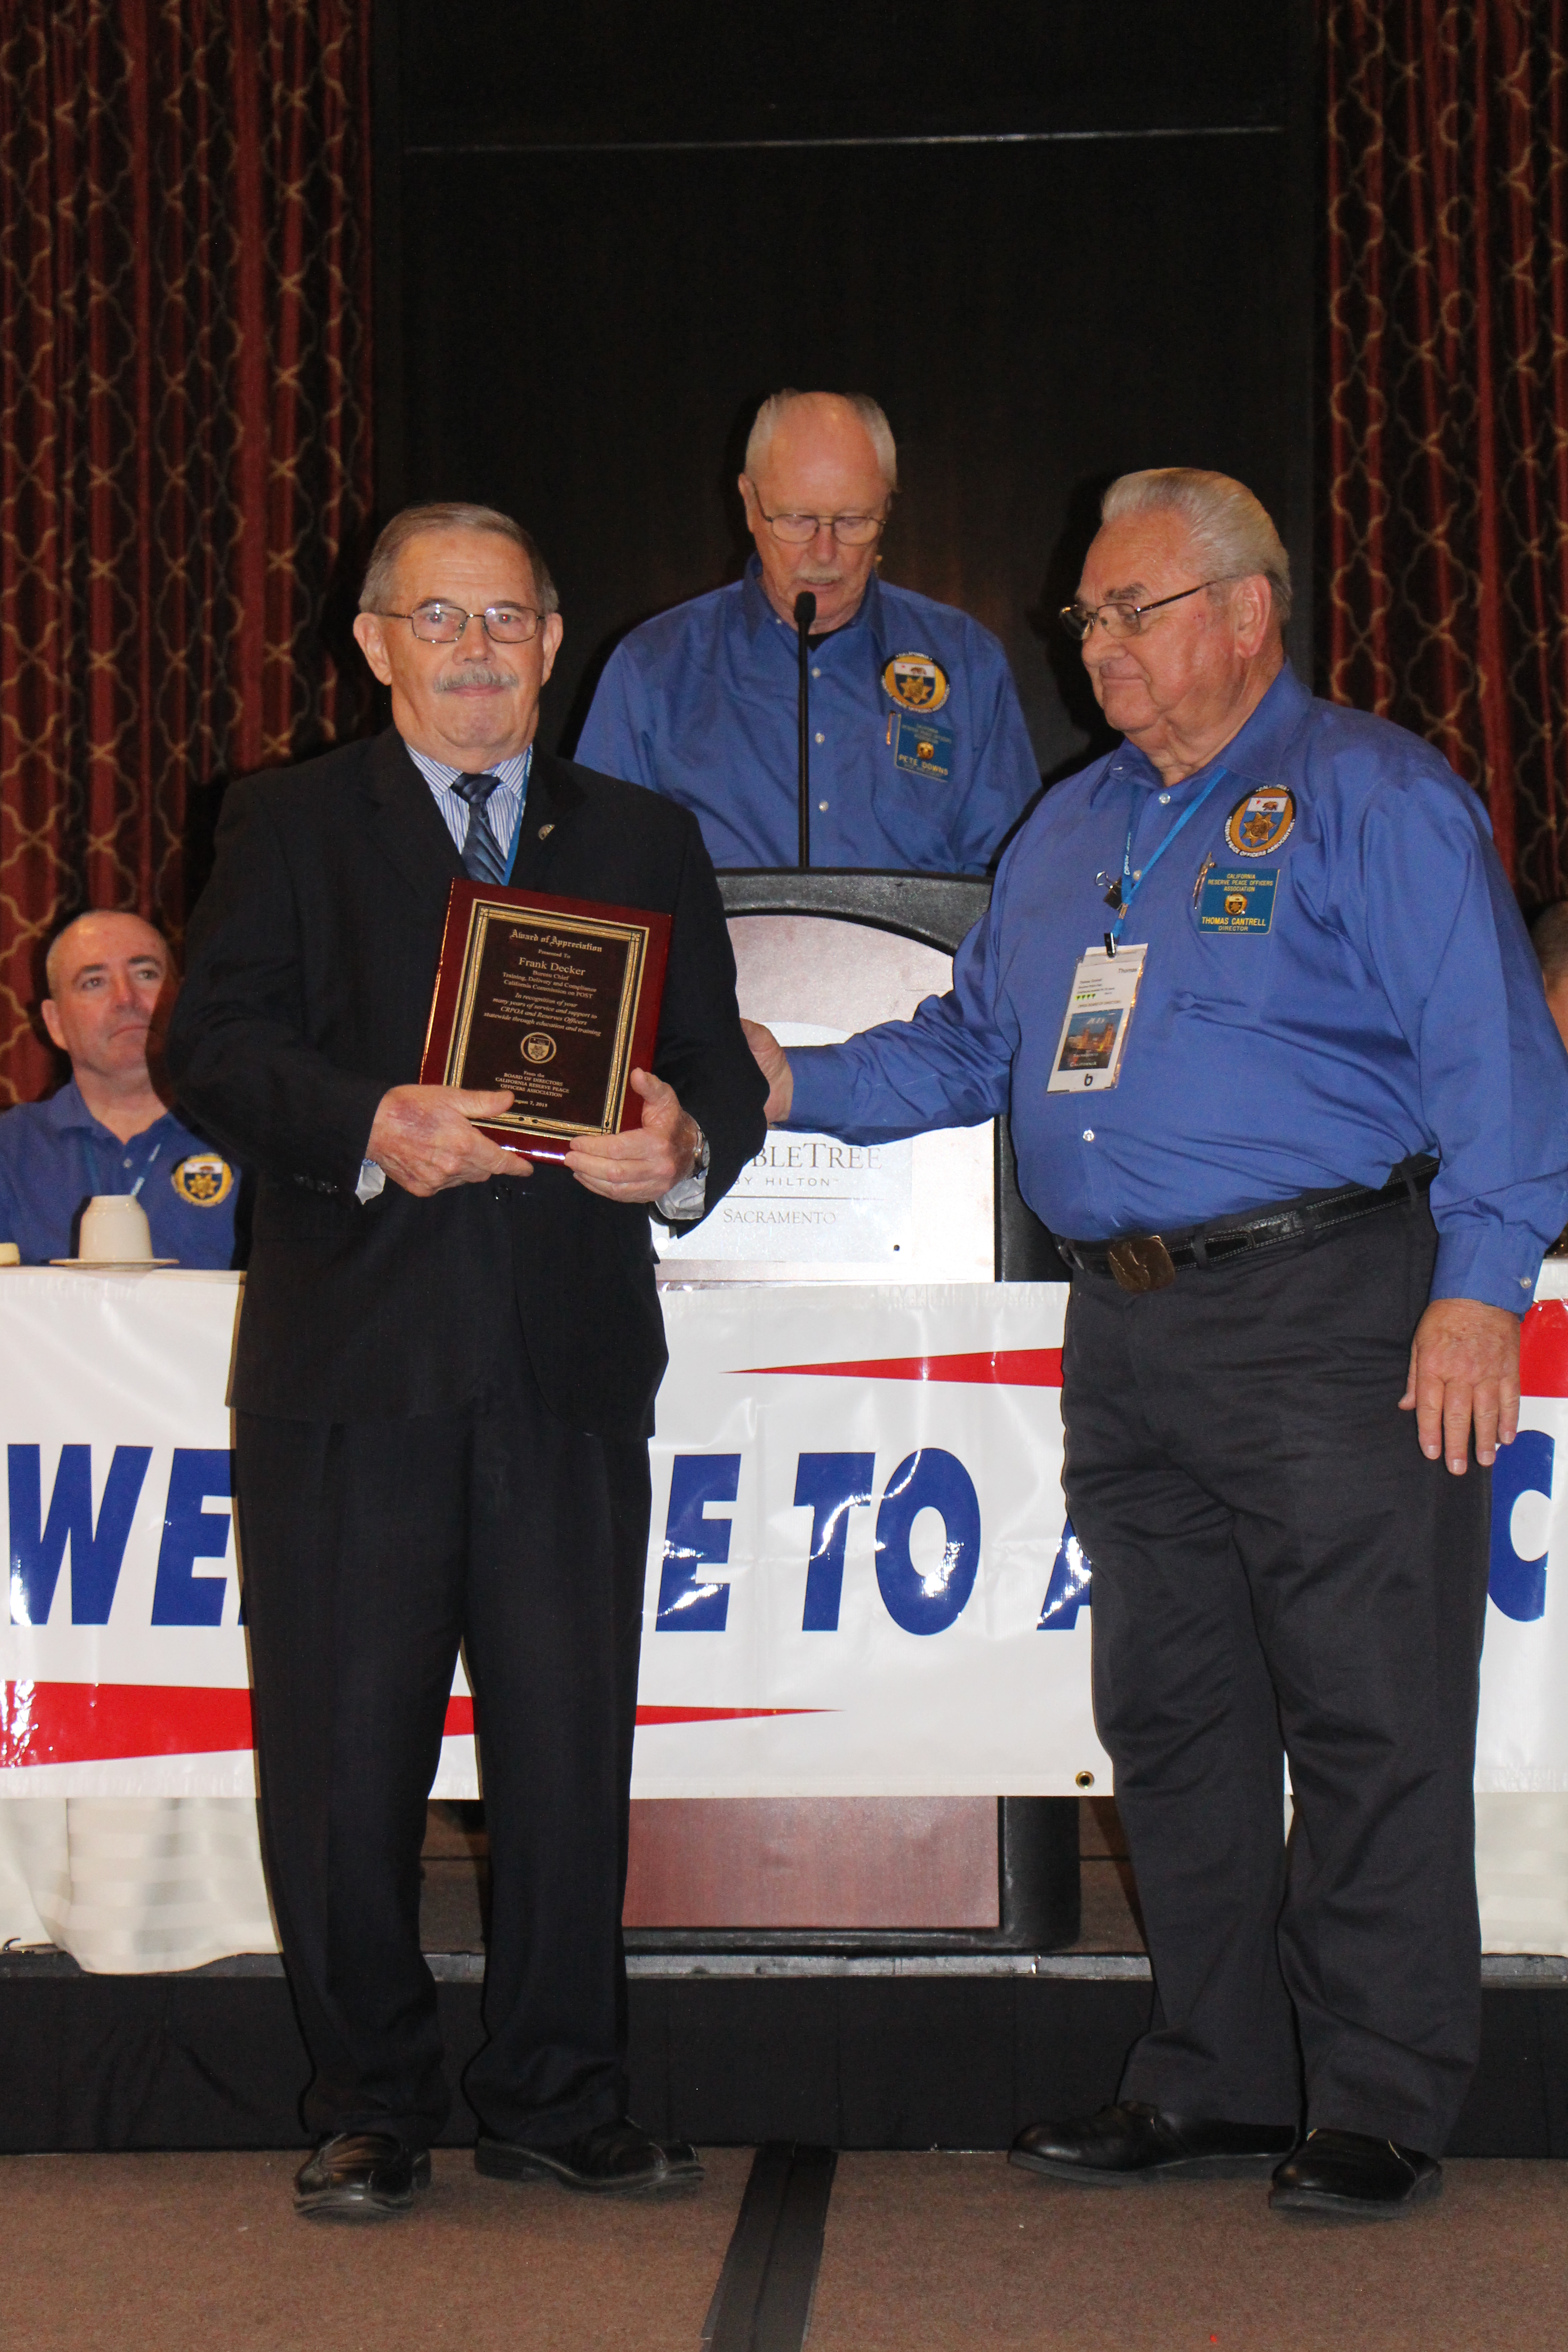 Bureau Chief Frank Decker Receives an Award